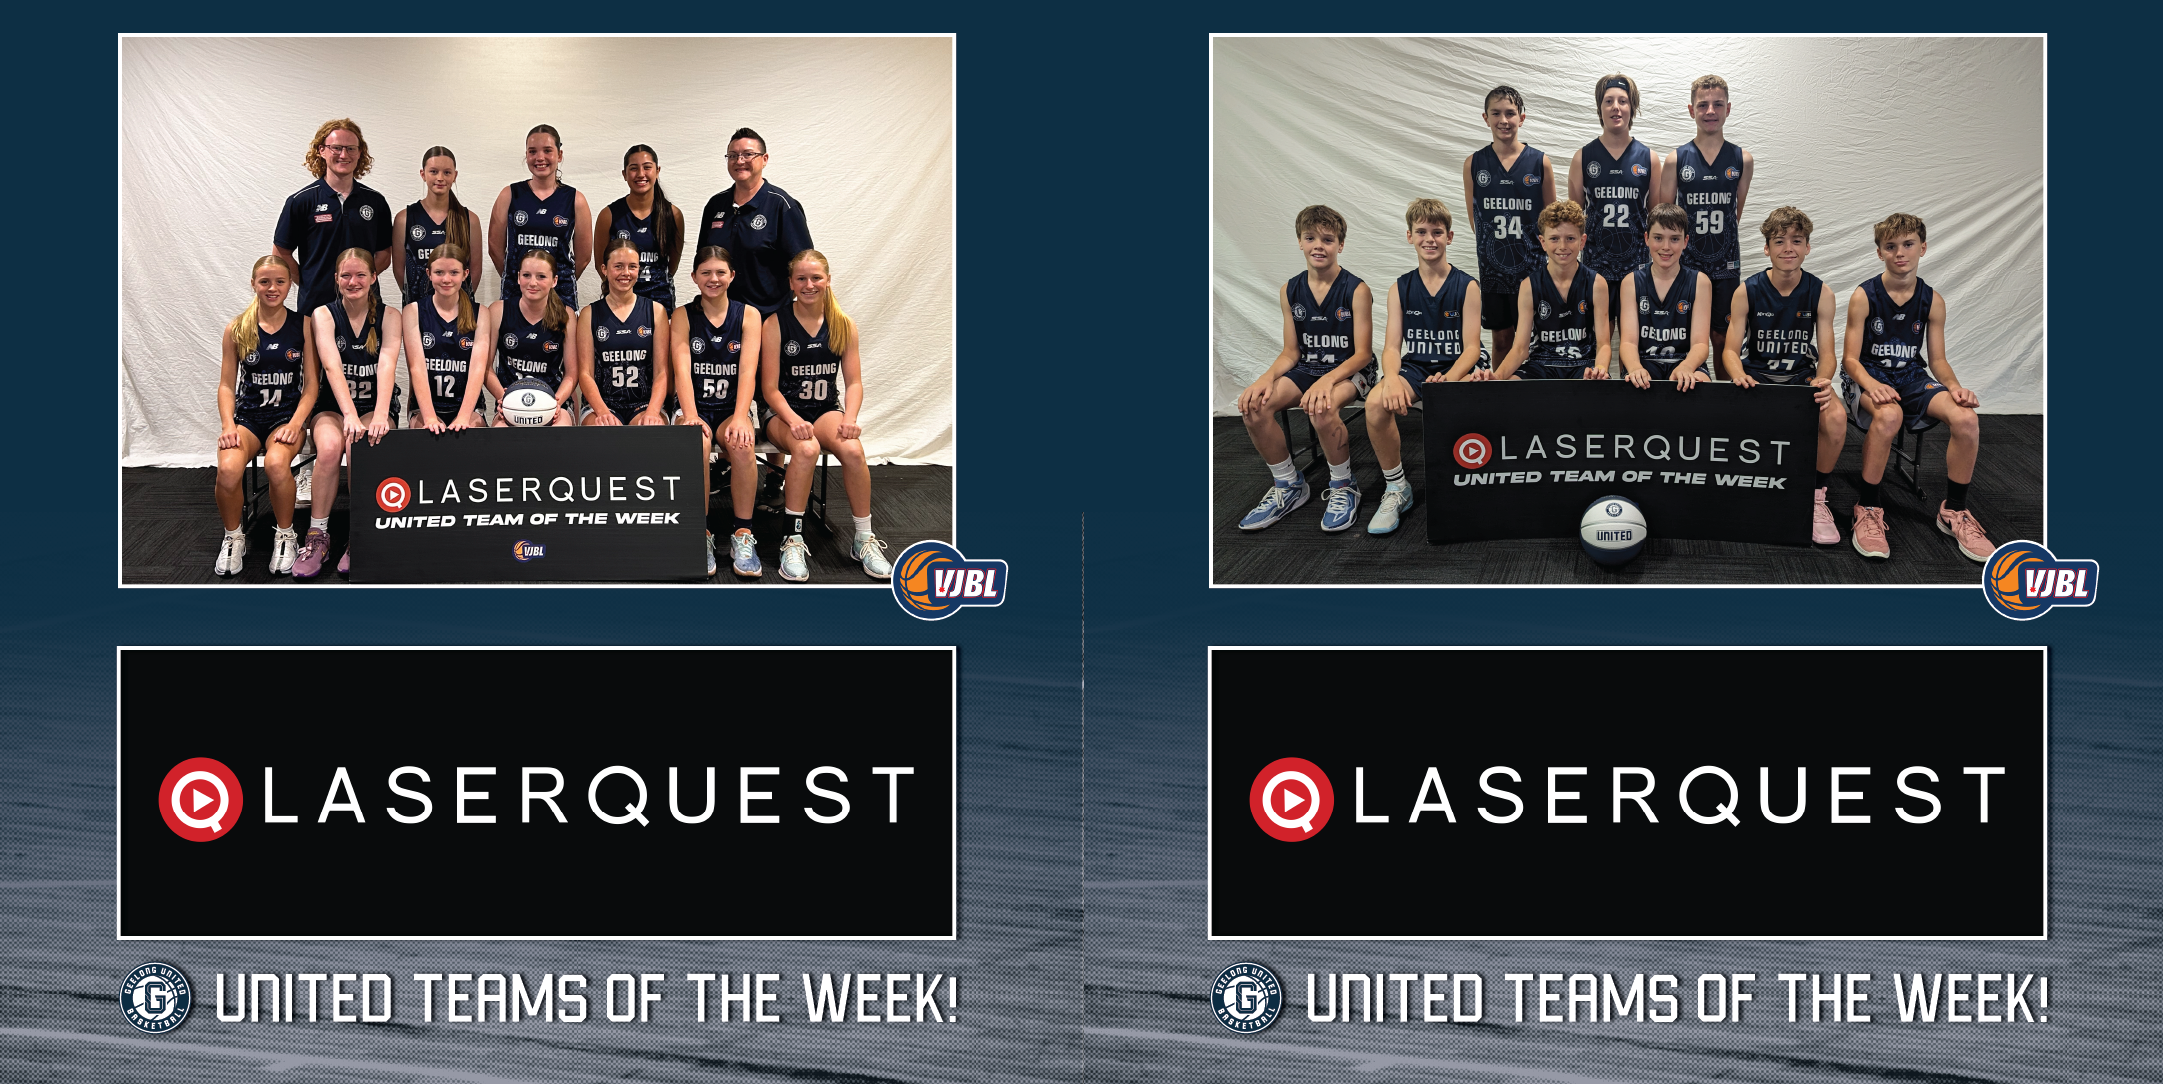 Laserquest teams of the week